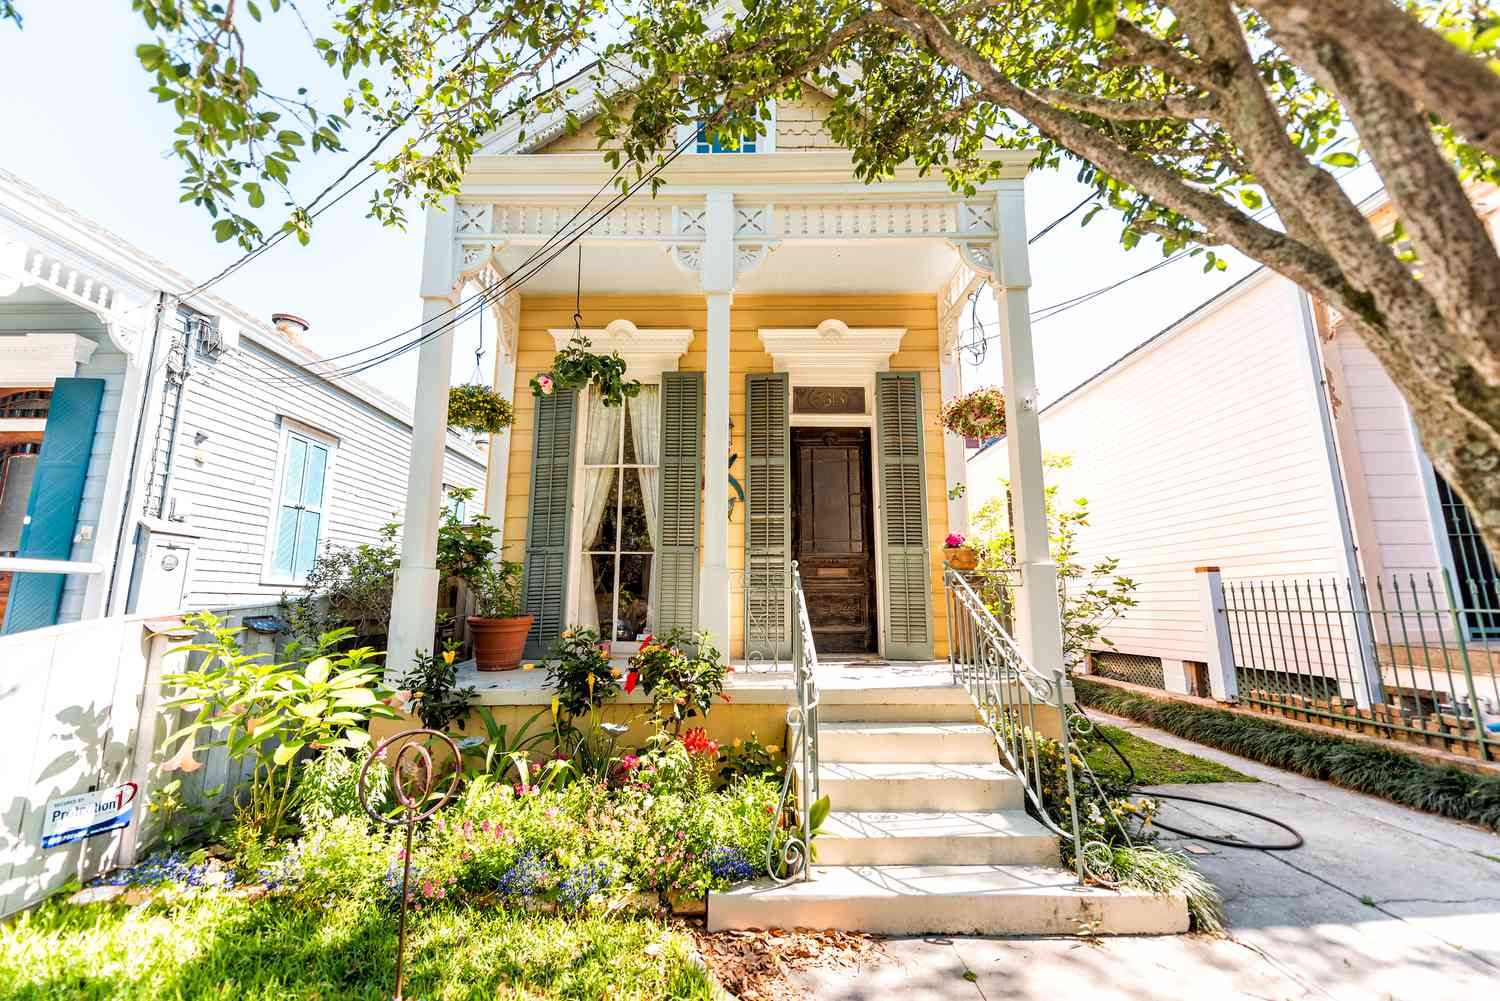 Kleines Landhaus im griechischen Stil in New Orleans.